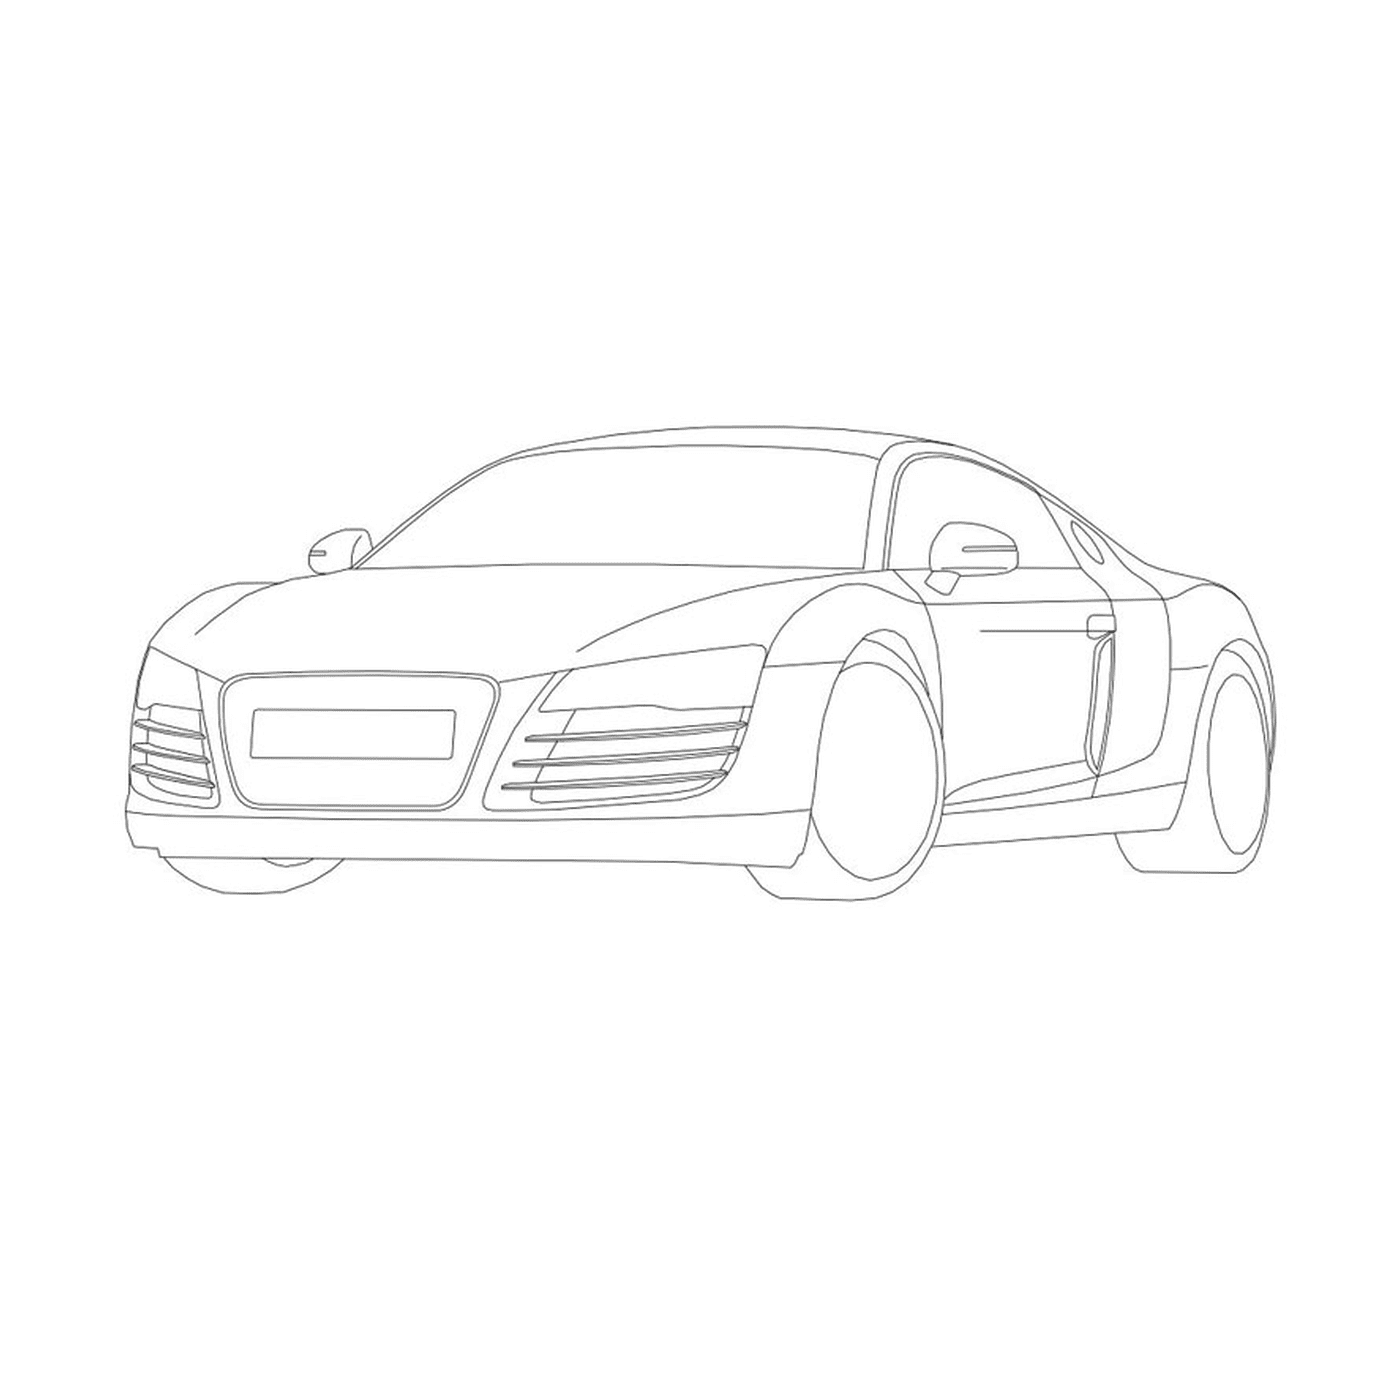   Voiture Audi R8 dessinée 